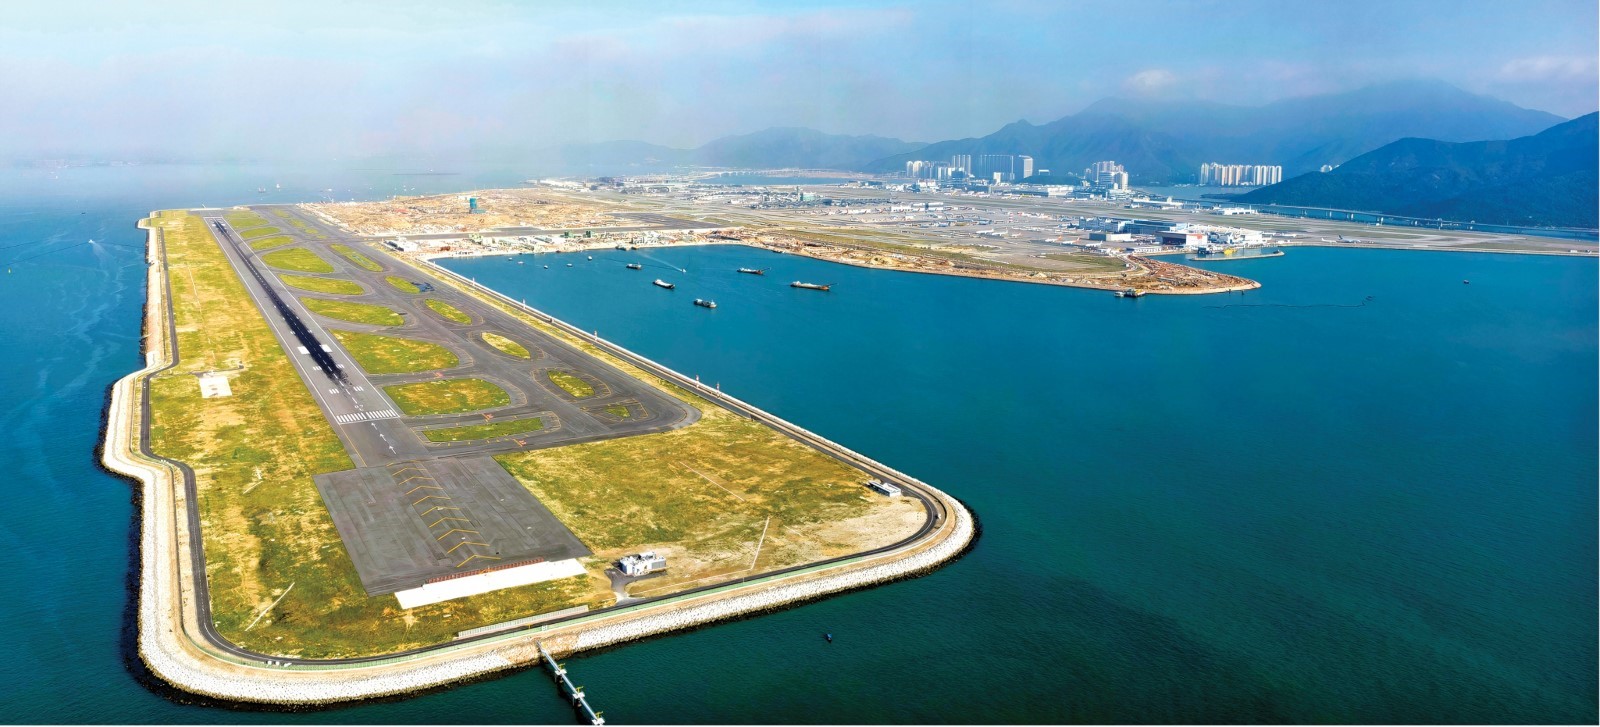 Third runway at Hong Kong International Airport